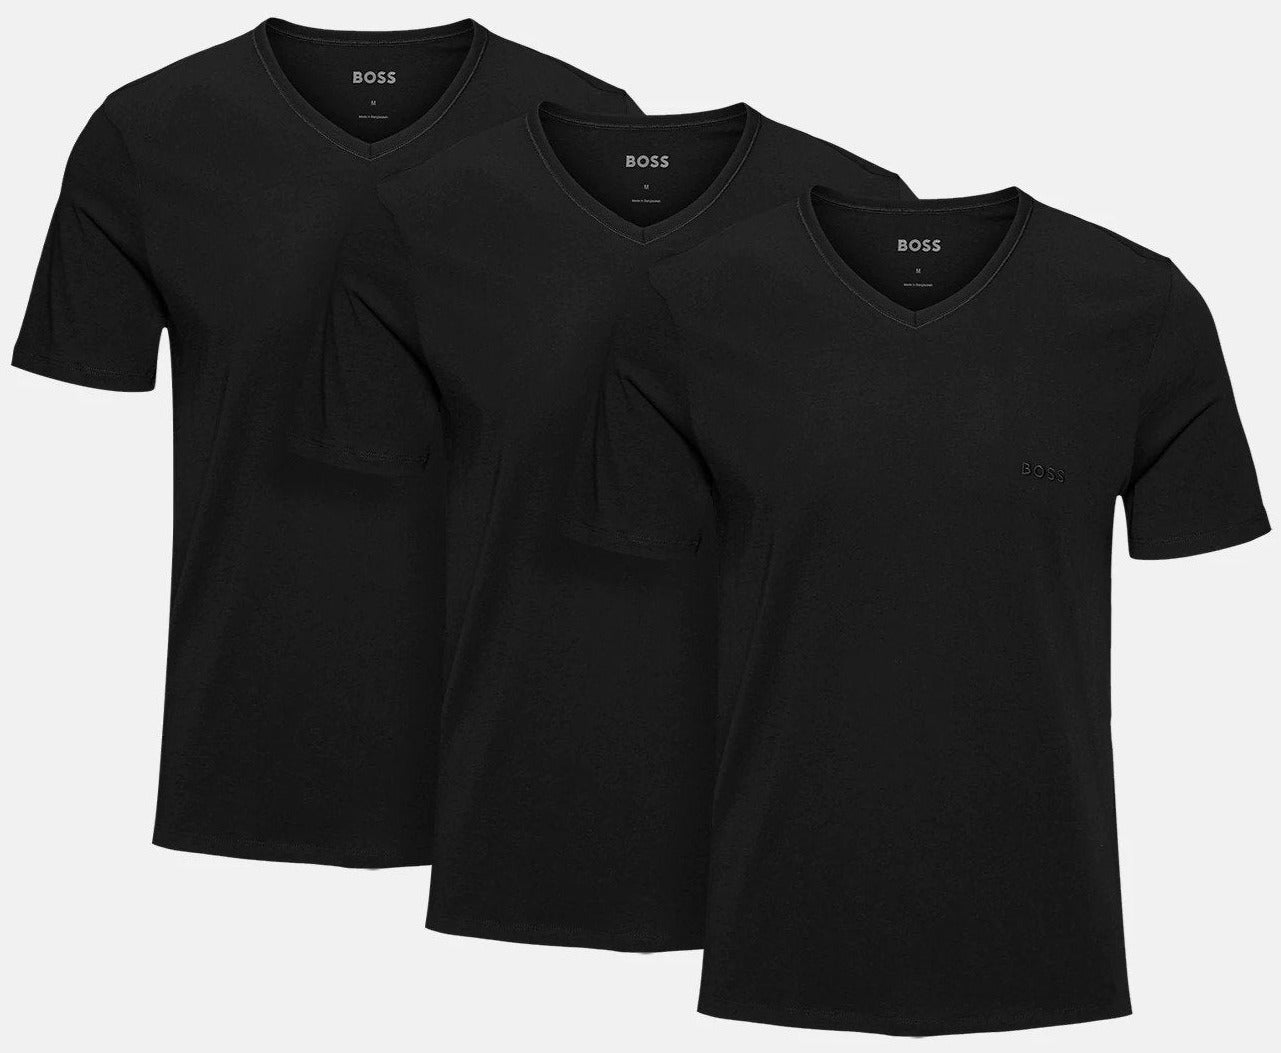 Hugo Boss Men's Classic V-Neck Tee / T-Shirt / Tshirt 3-Pack - Black